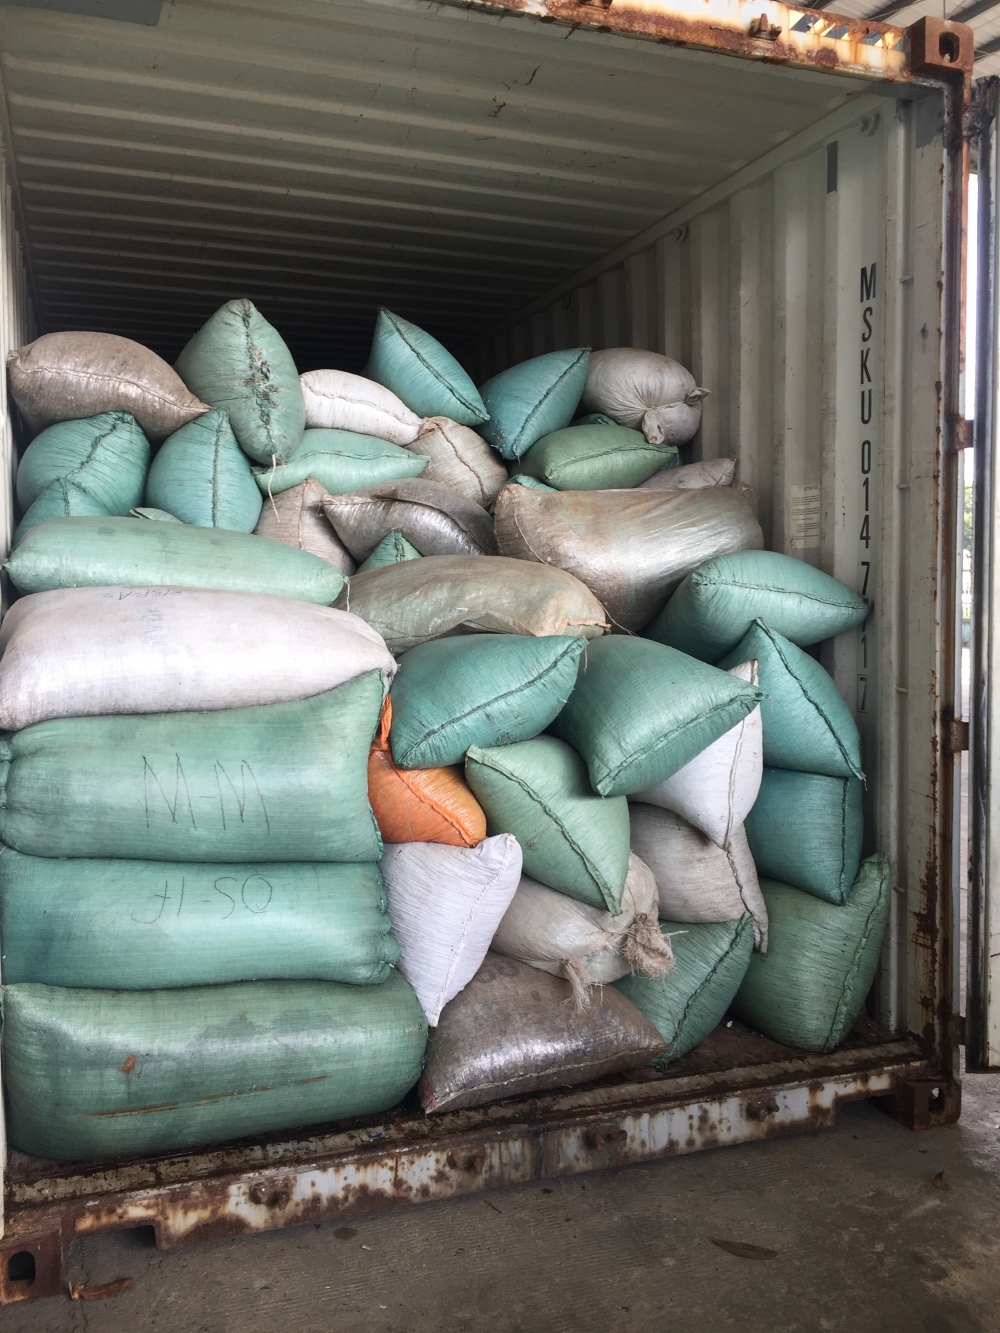 Hải quan Đà Nẵng bắt giữ lô hàng “khủng” với 6 tấn vảy tê tê và 2 tấn ngà voi